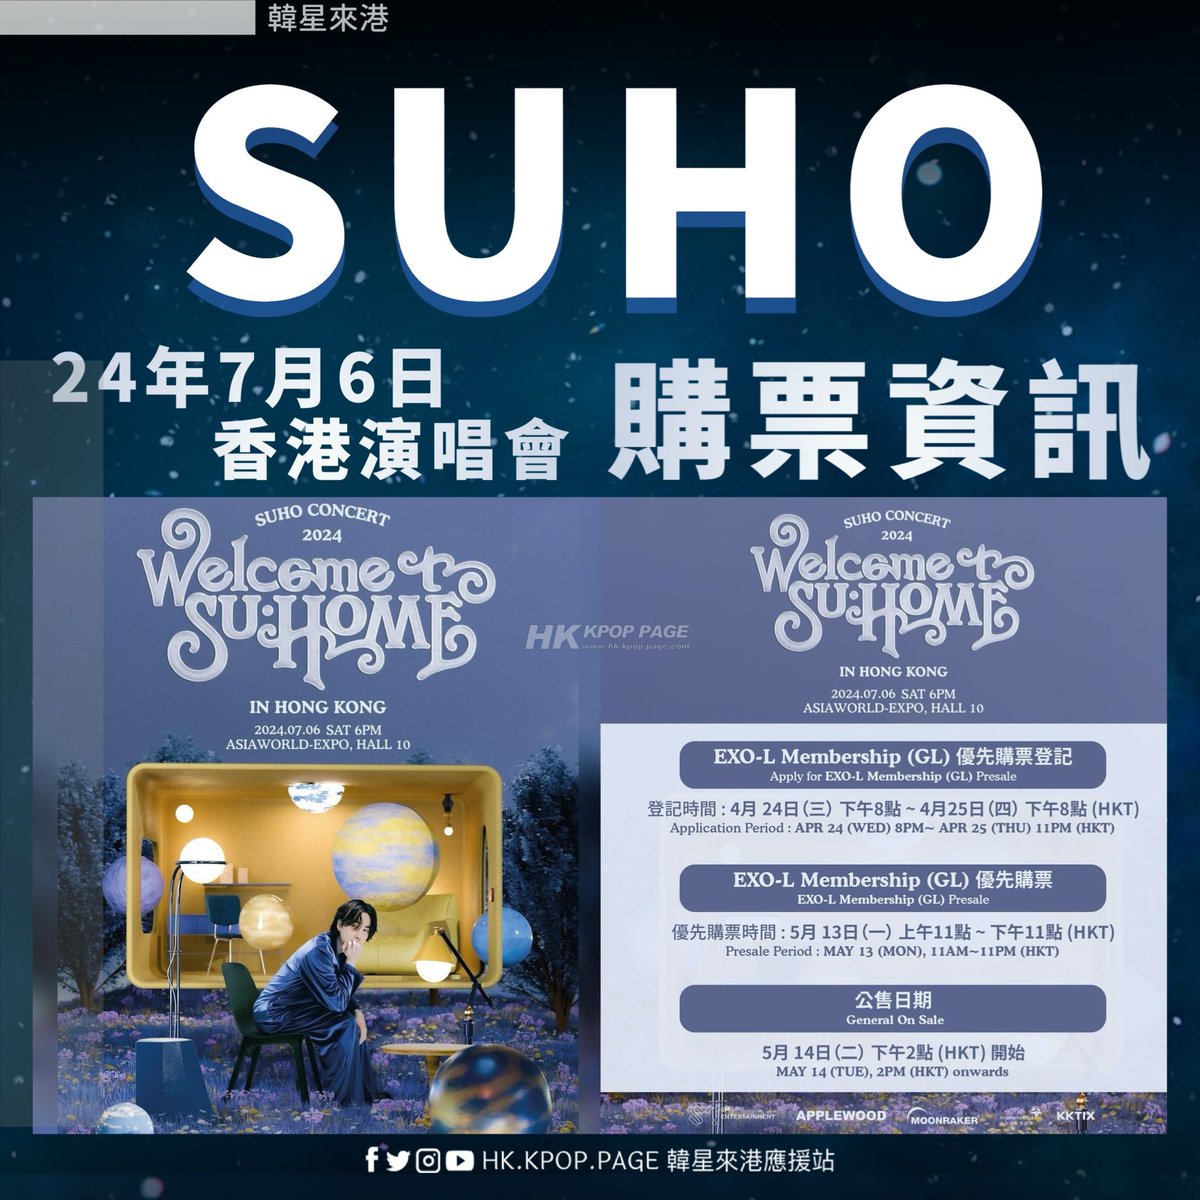 韓星來港➟ SUHO 香港演唱會購票資訊 2024 SUHO CONCERT <SU:HOME> IN HONG KONG 📅 7月6日(六), 下午6點 🏡 亞洲國際博覽館 (10號展館) ⬇ 詳細票務信息： ⏰ EXO-L Membership (GL) 優先購票登記期：4月24日 (三) 下午8點~4月25日 (四) 下午11點 🔗 EXO-L Membership (GL) 優先購票登記 :